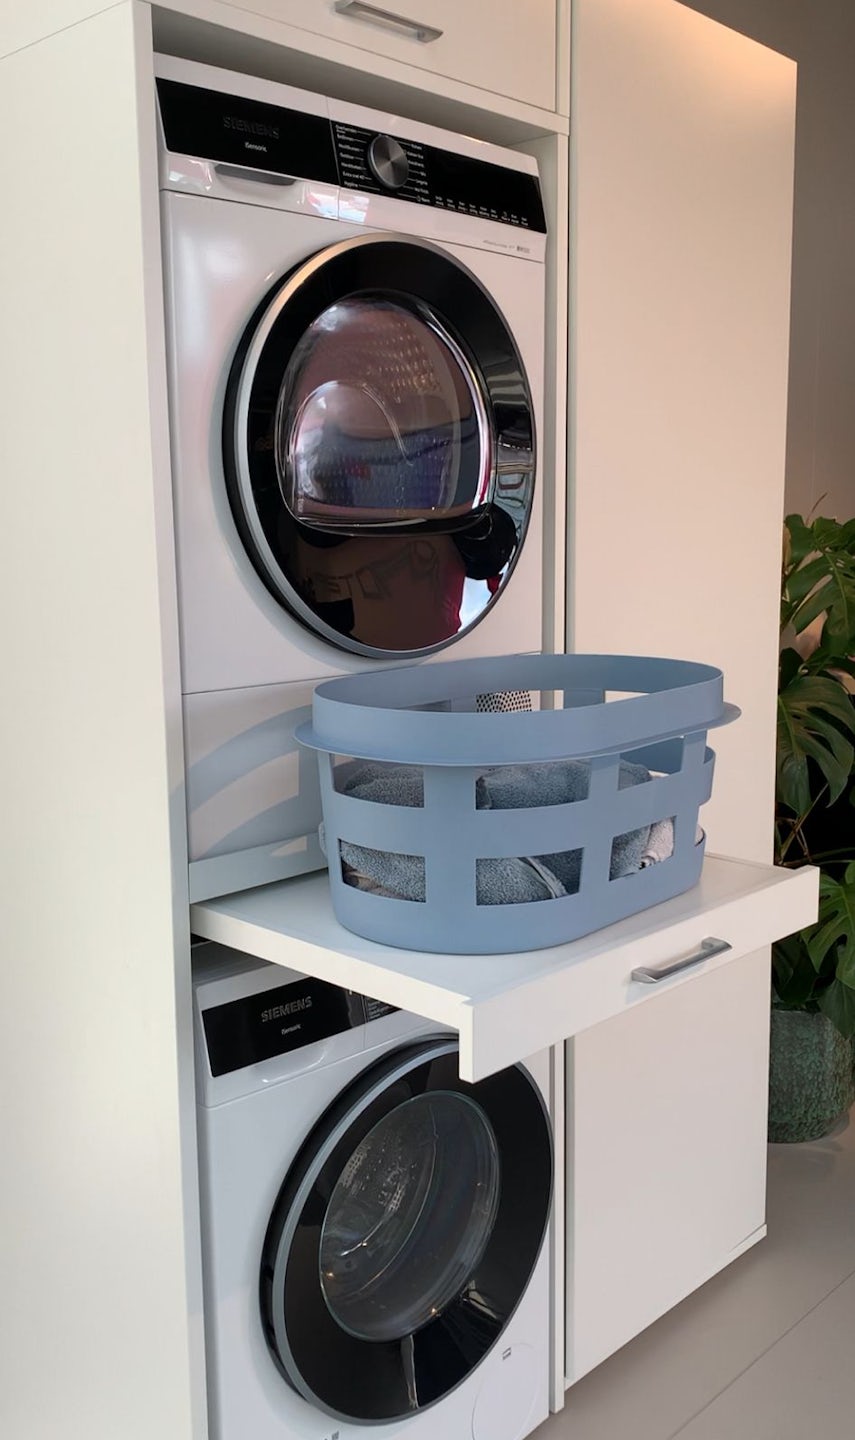 Ook al heb je een klein washok, wastoren heeft genoeg ideeen voor het inrichten van je wasruimte. Denk bijvoorbeeld aan een wasmachine kast waarbij je wasmachine en droger veilig op elkaar staan. Bovendien behoud je voldoende opbergruimte